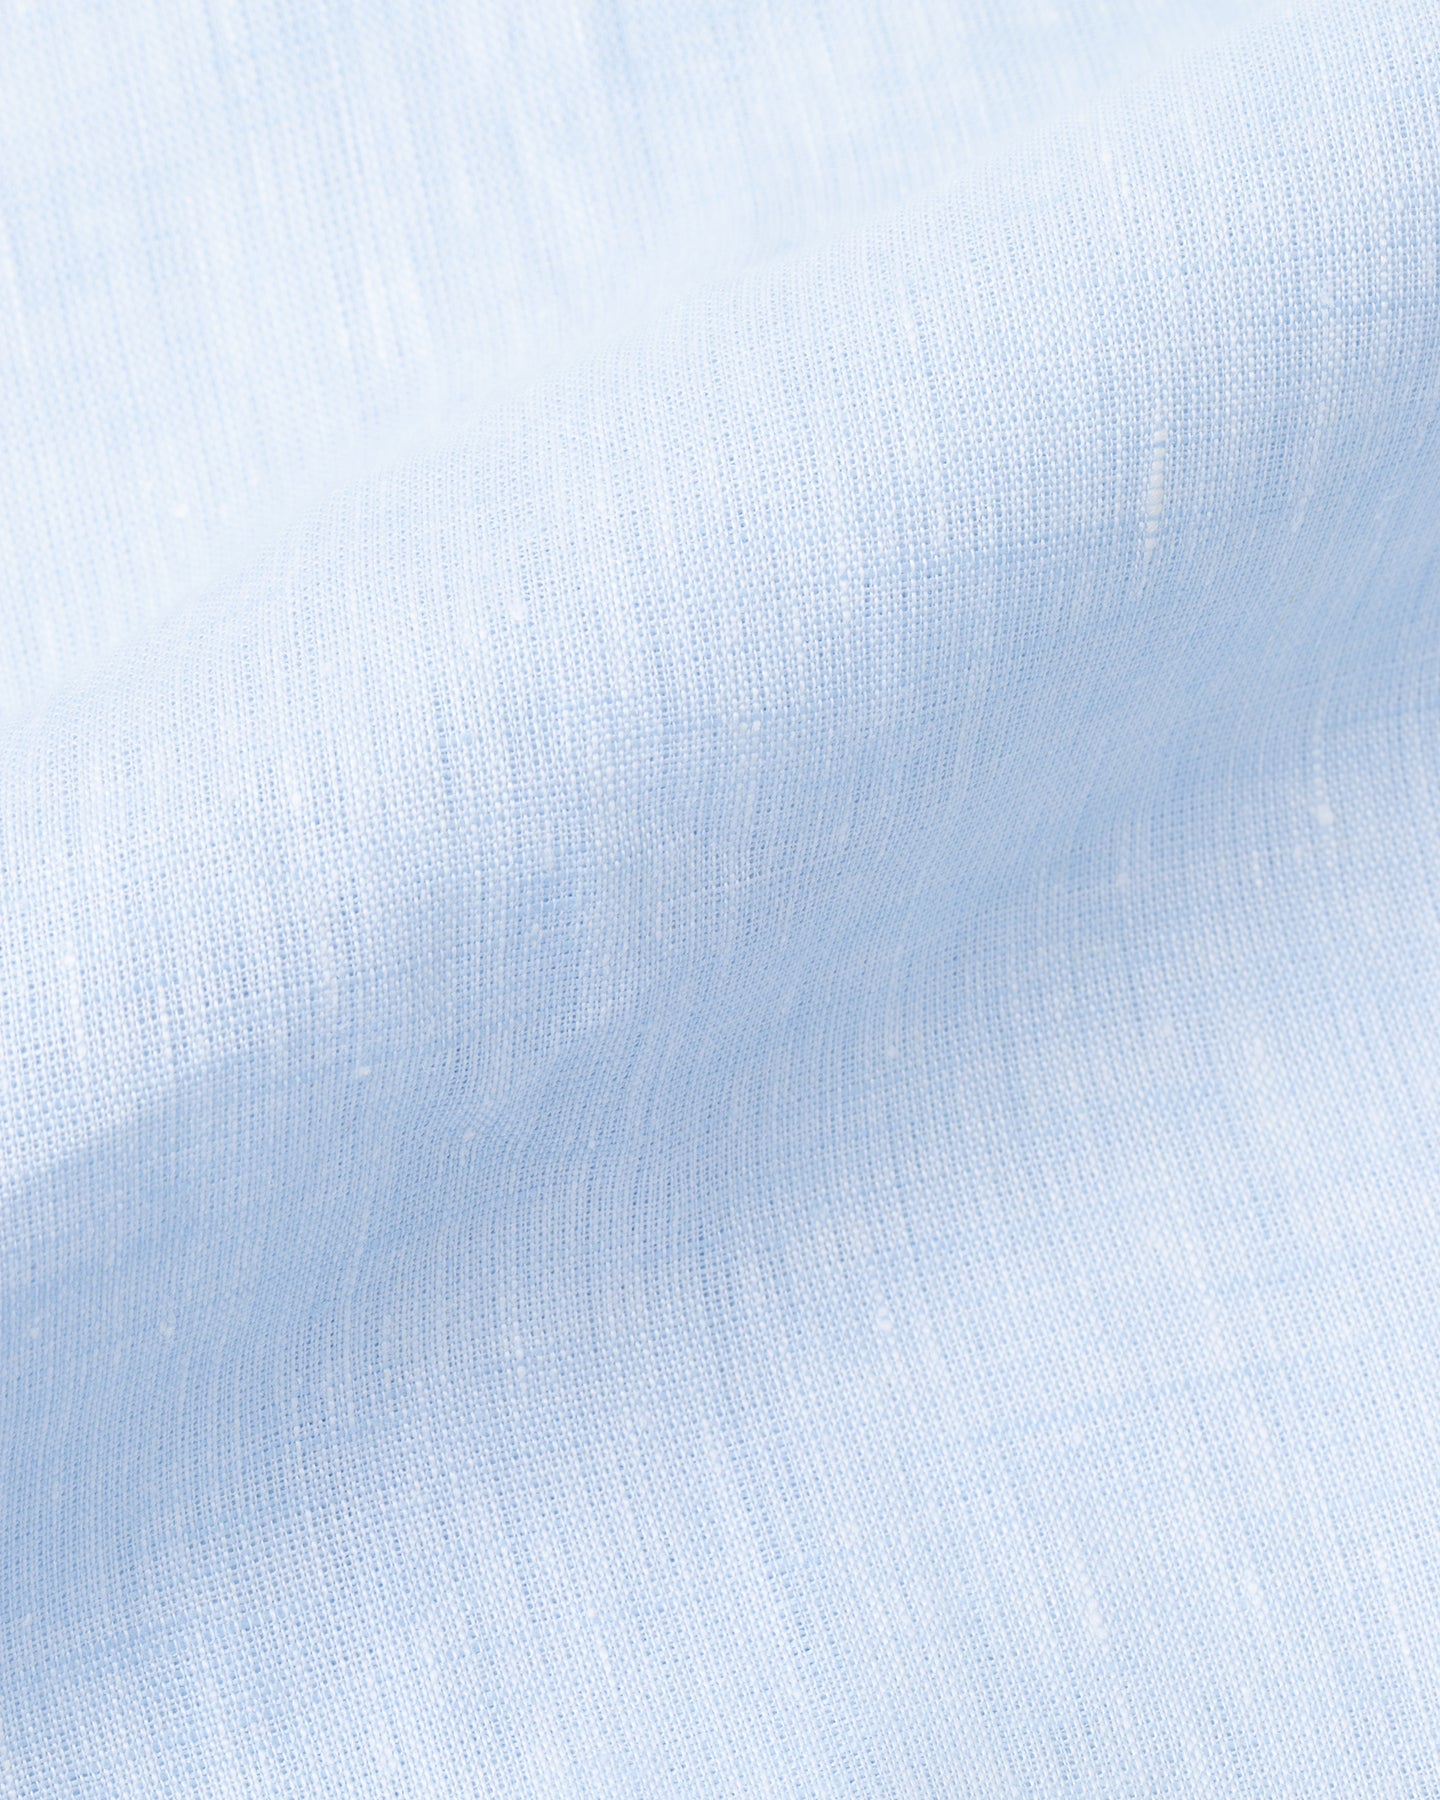 Light blue linen shirt fabric